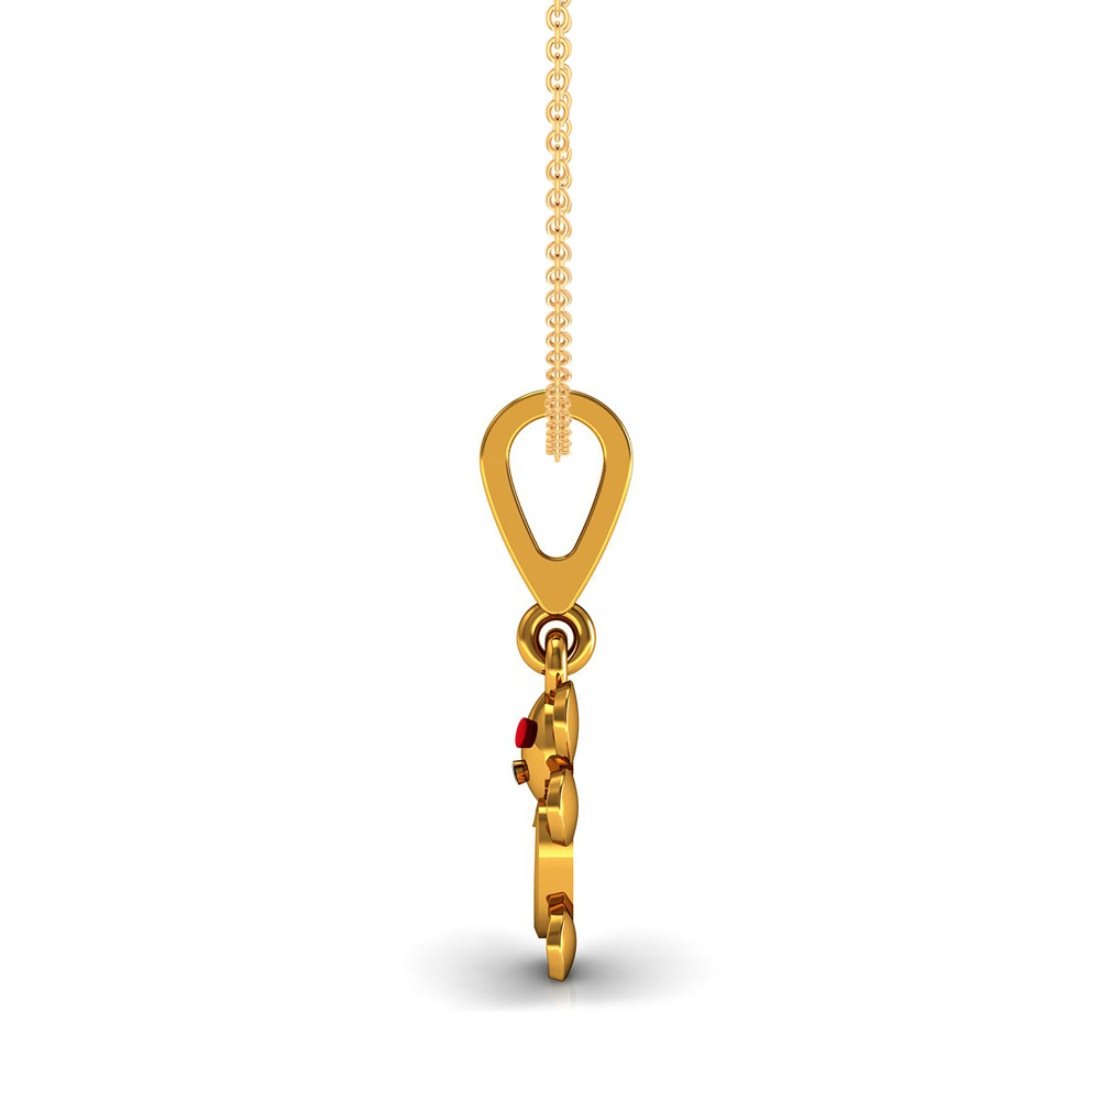 Enamel teddy kids pendant, 18k solid gold jewelry